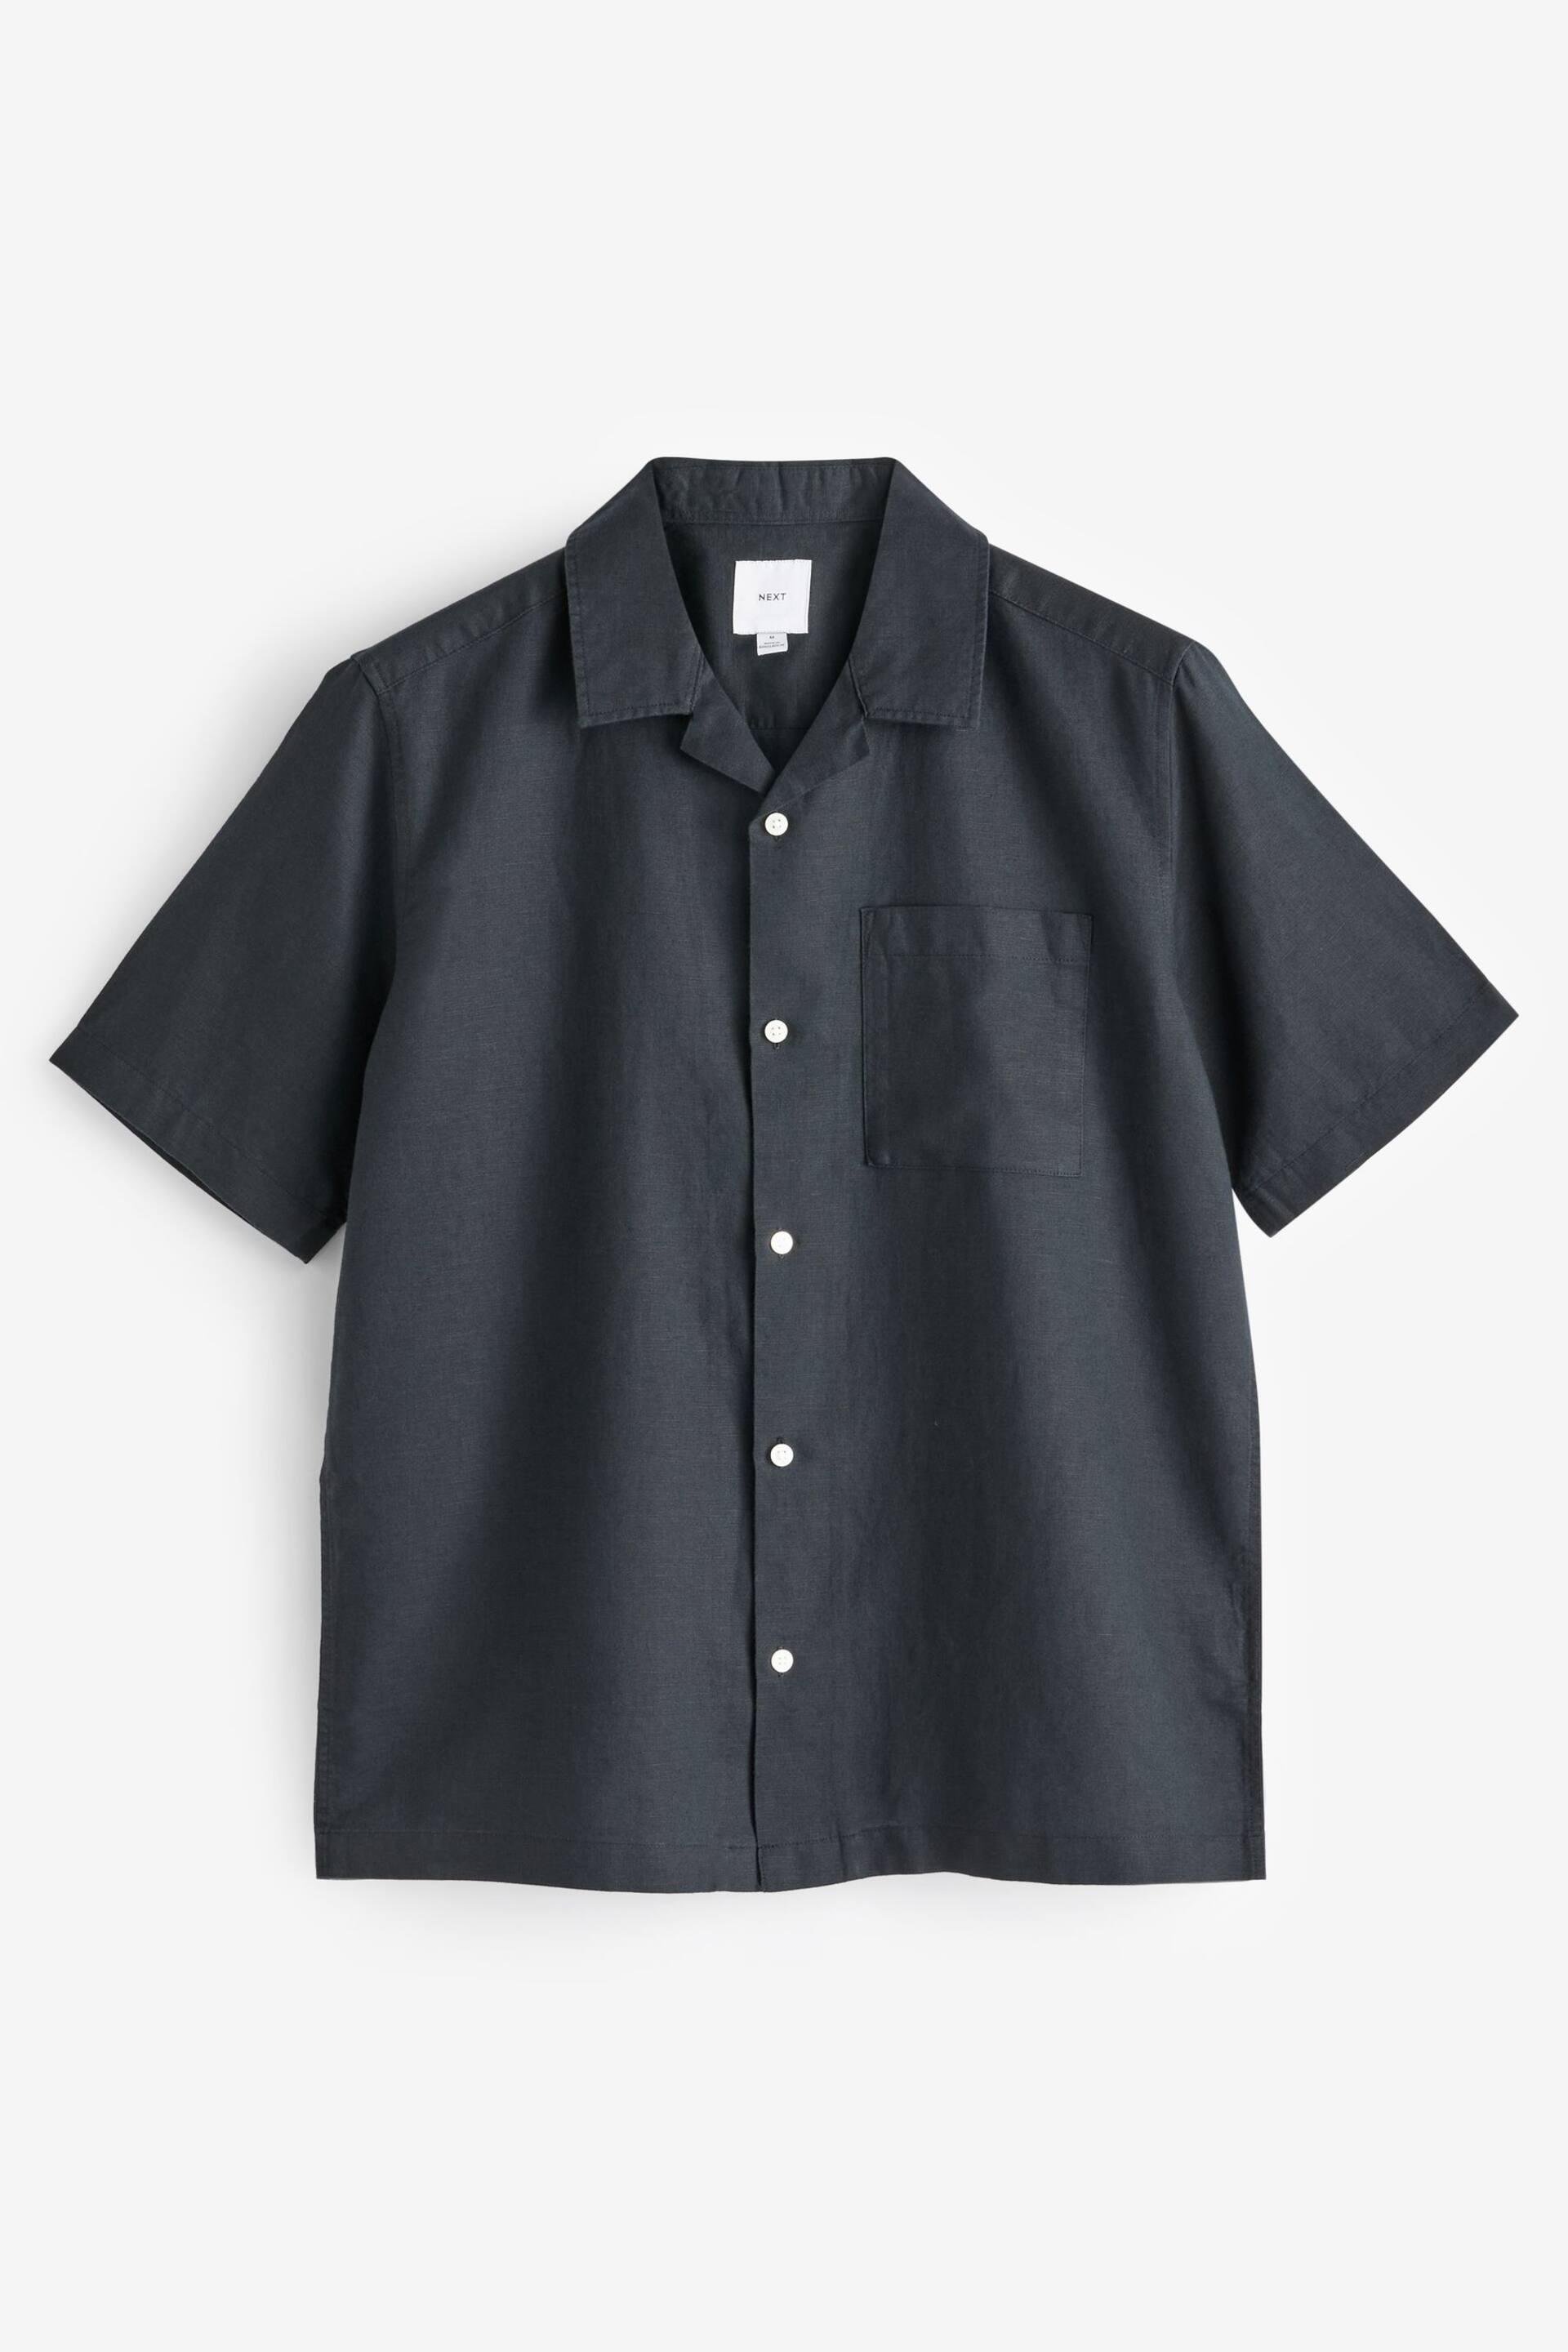 Black Cuban Collar Linen Blend Short Sleeve Shirt - Image 4 of 6